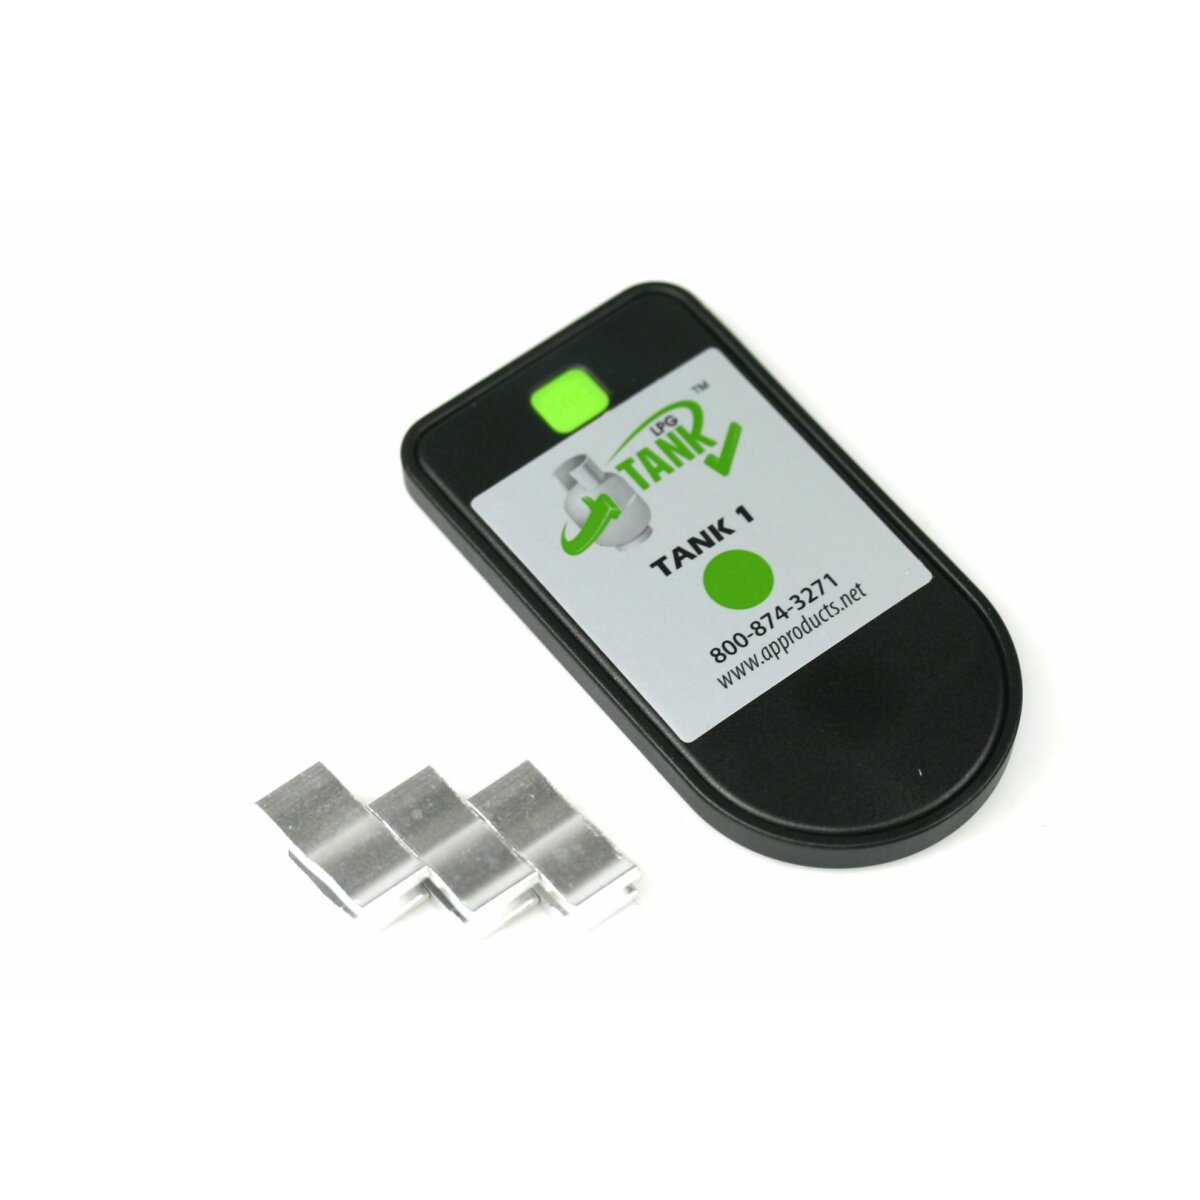 MOPEKA PRO Gasflaschen Gas Füllstandsanzeige Bluetooth mit Magnet für  Stahlgasflaschen 